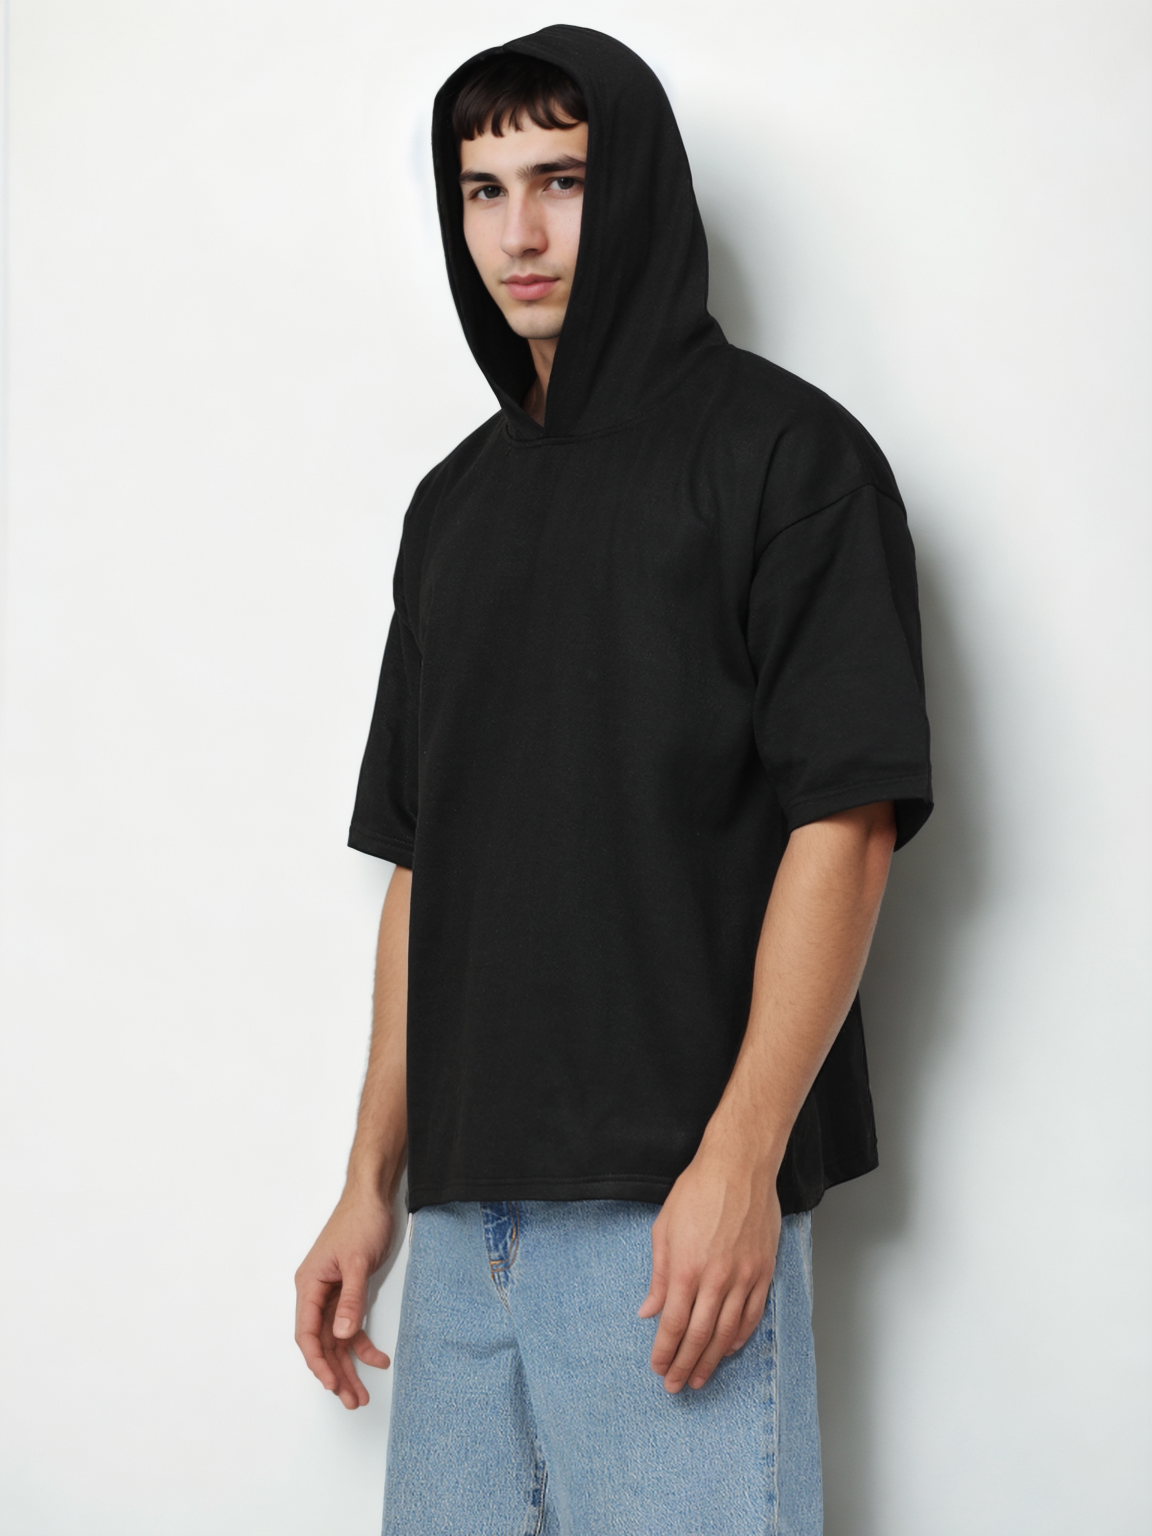 Hemsters Black Half Sleeve Relaxed Fit Hoodie For Men